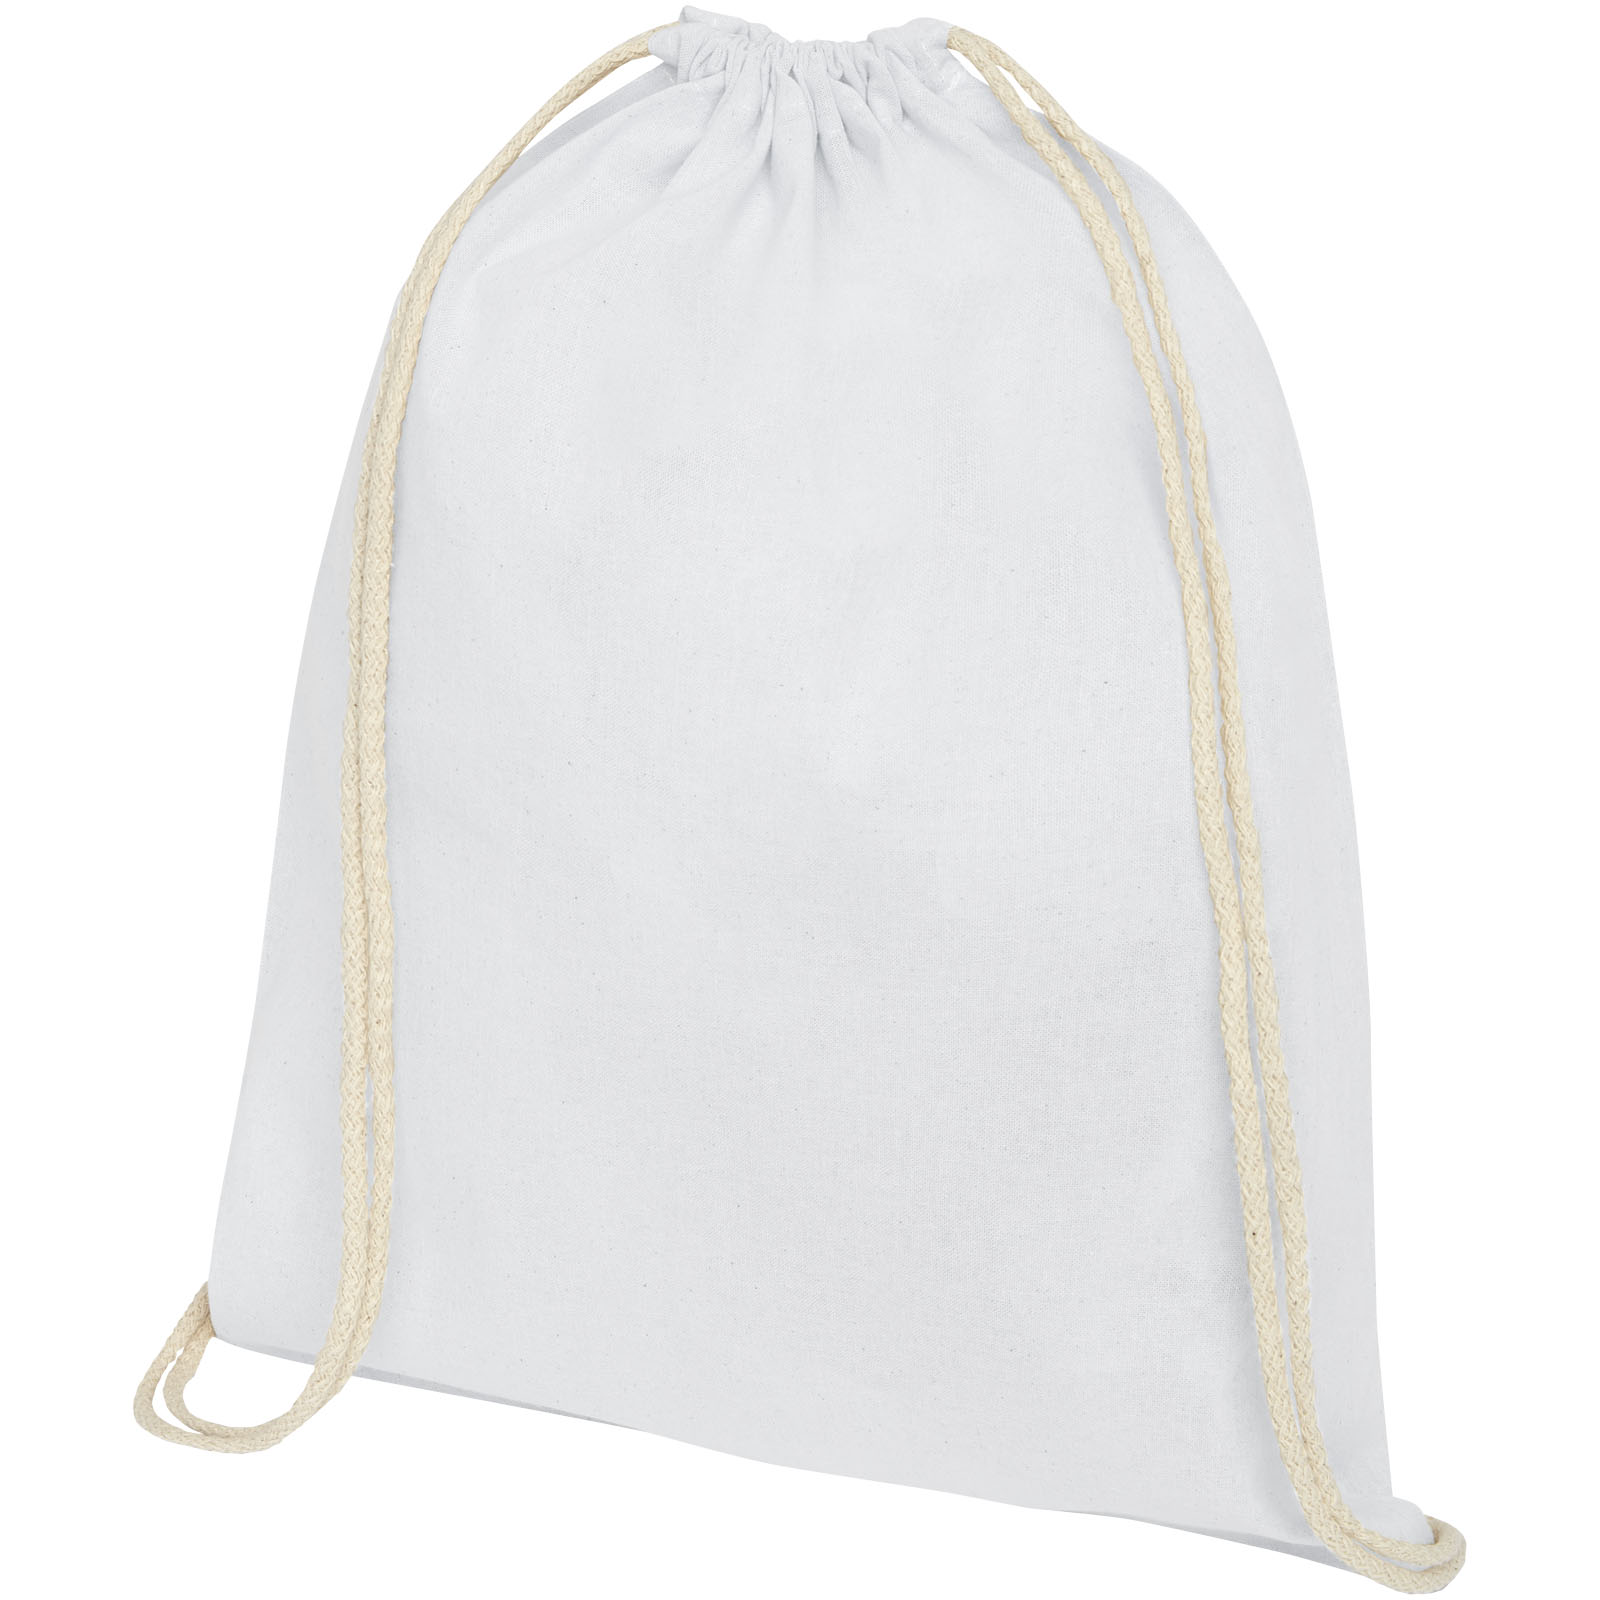 Advertising Drawstring Bags - Oregon 140 g/m² cotton drawstring bag 5L - 0